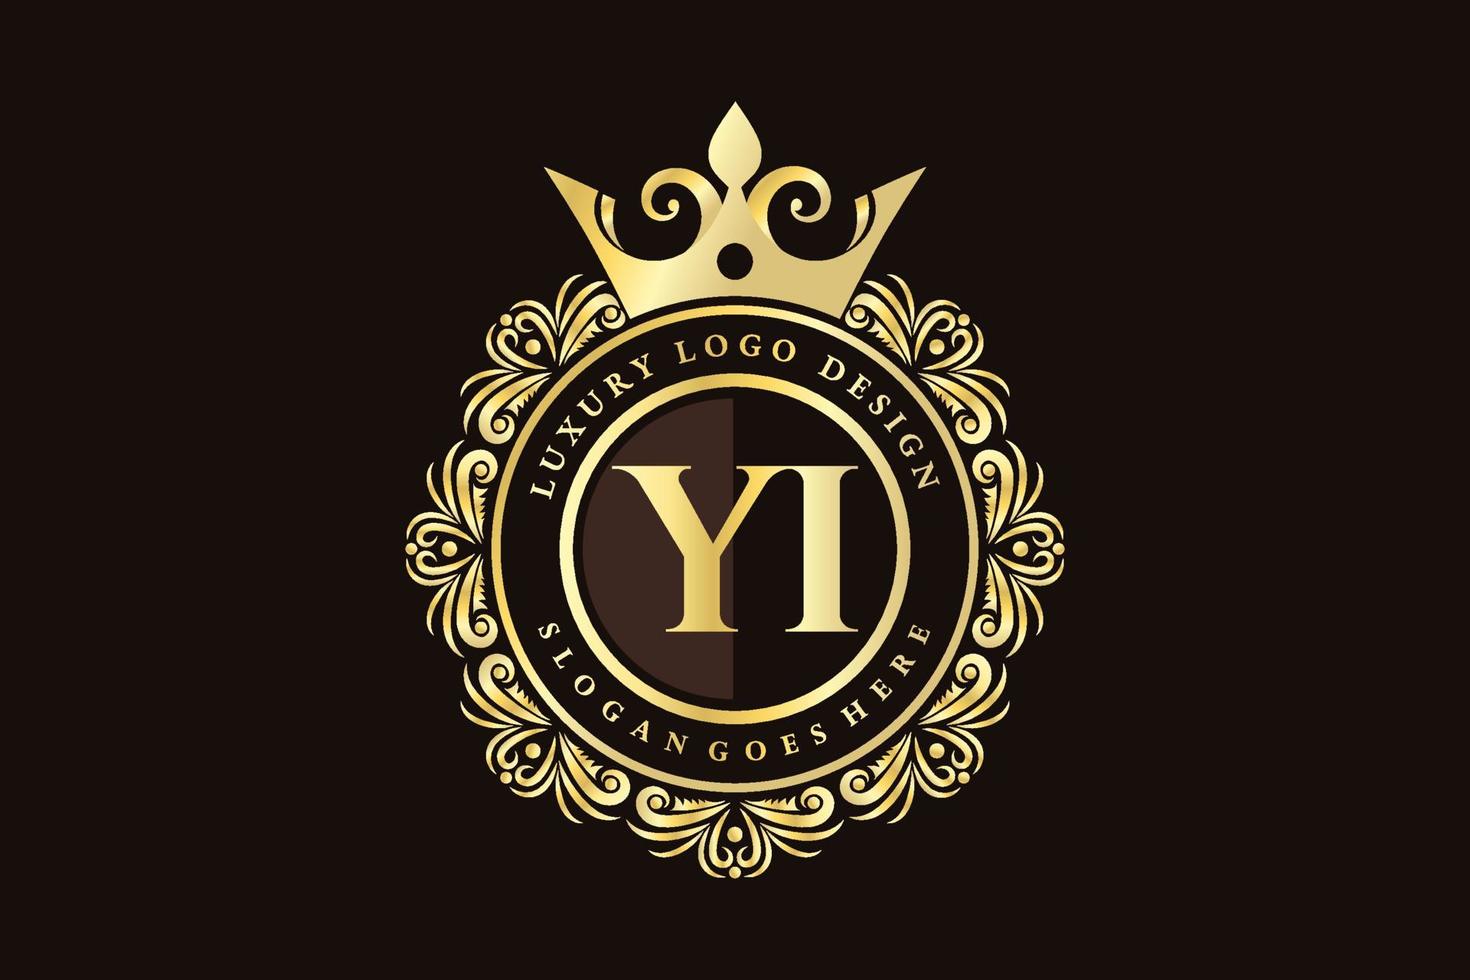 yi anfangsbuchstabe gold kalligrafisch feminin floral handgezeichnet heraldisch monogramm antik vintage stil luxus logo design premium vektor